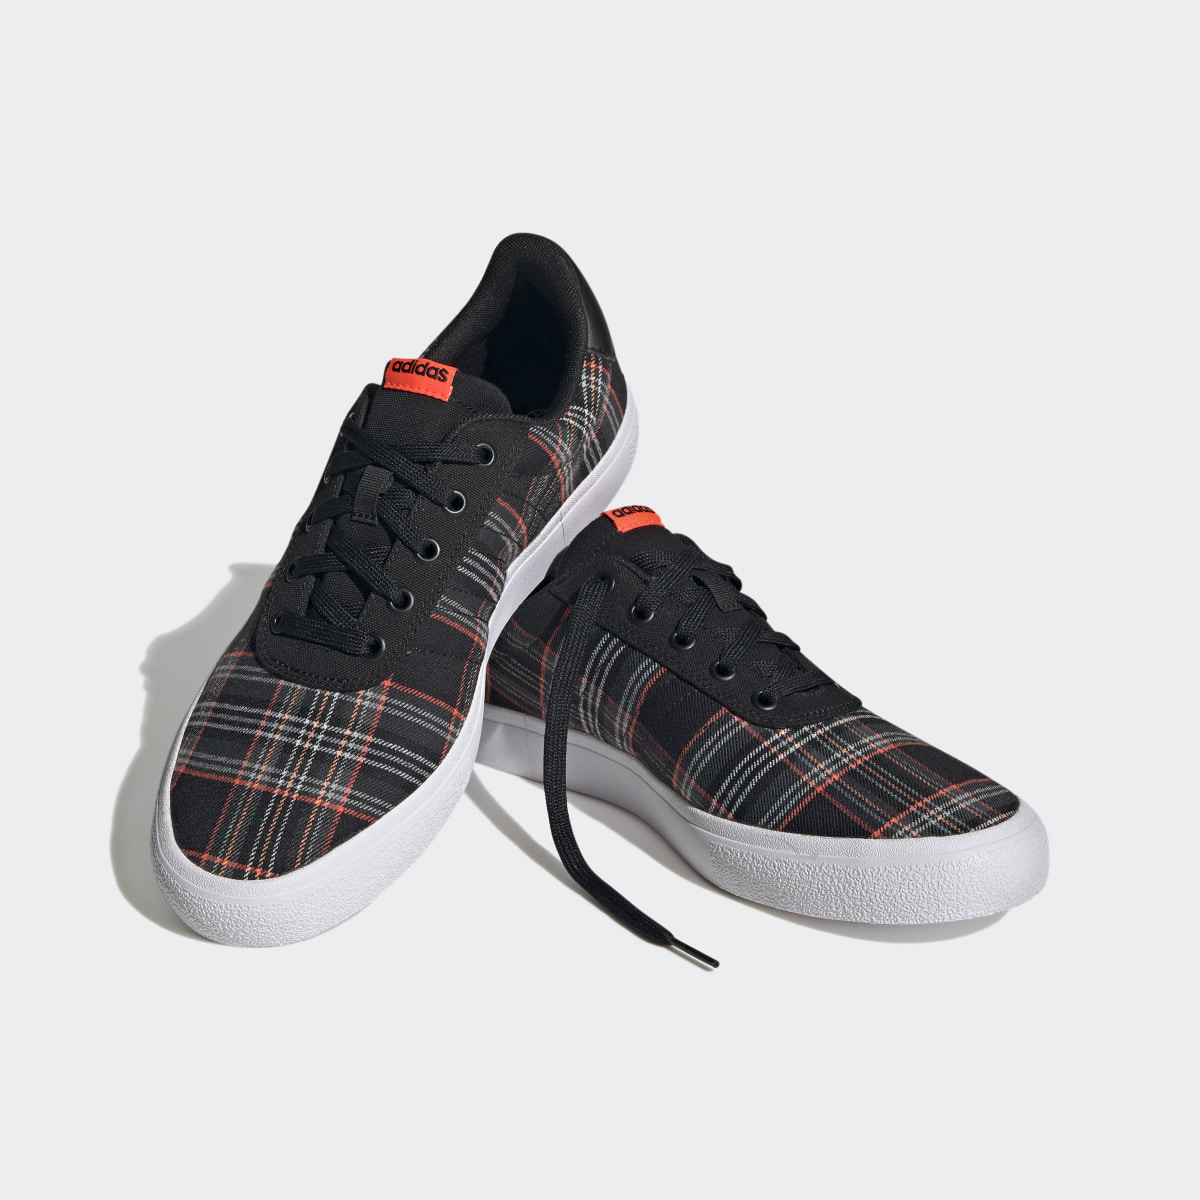 Adidas Vulc Raid3r Lifestyle Skateboarding 3-Stripes Branding Shoes. 5